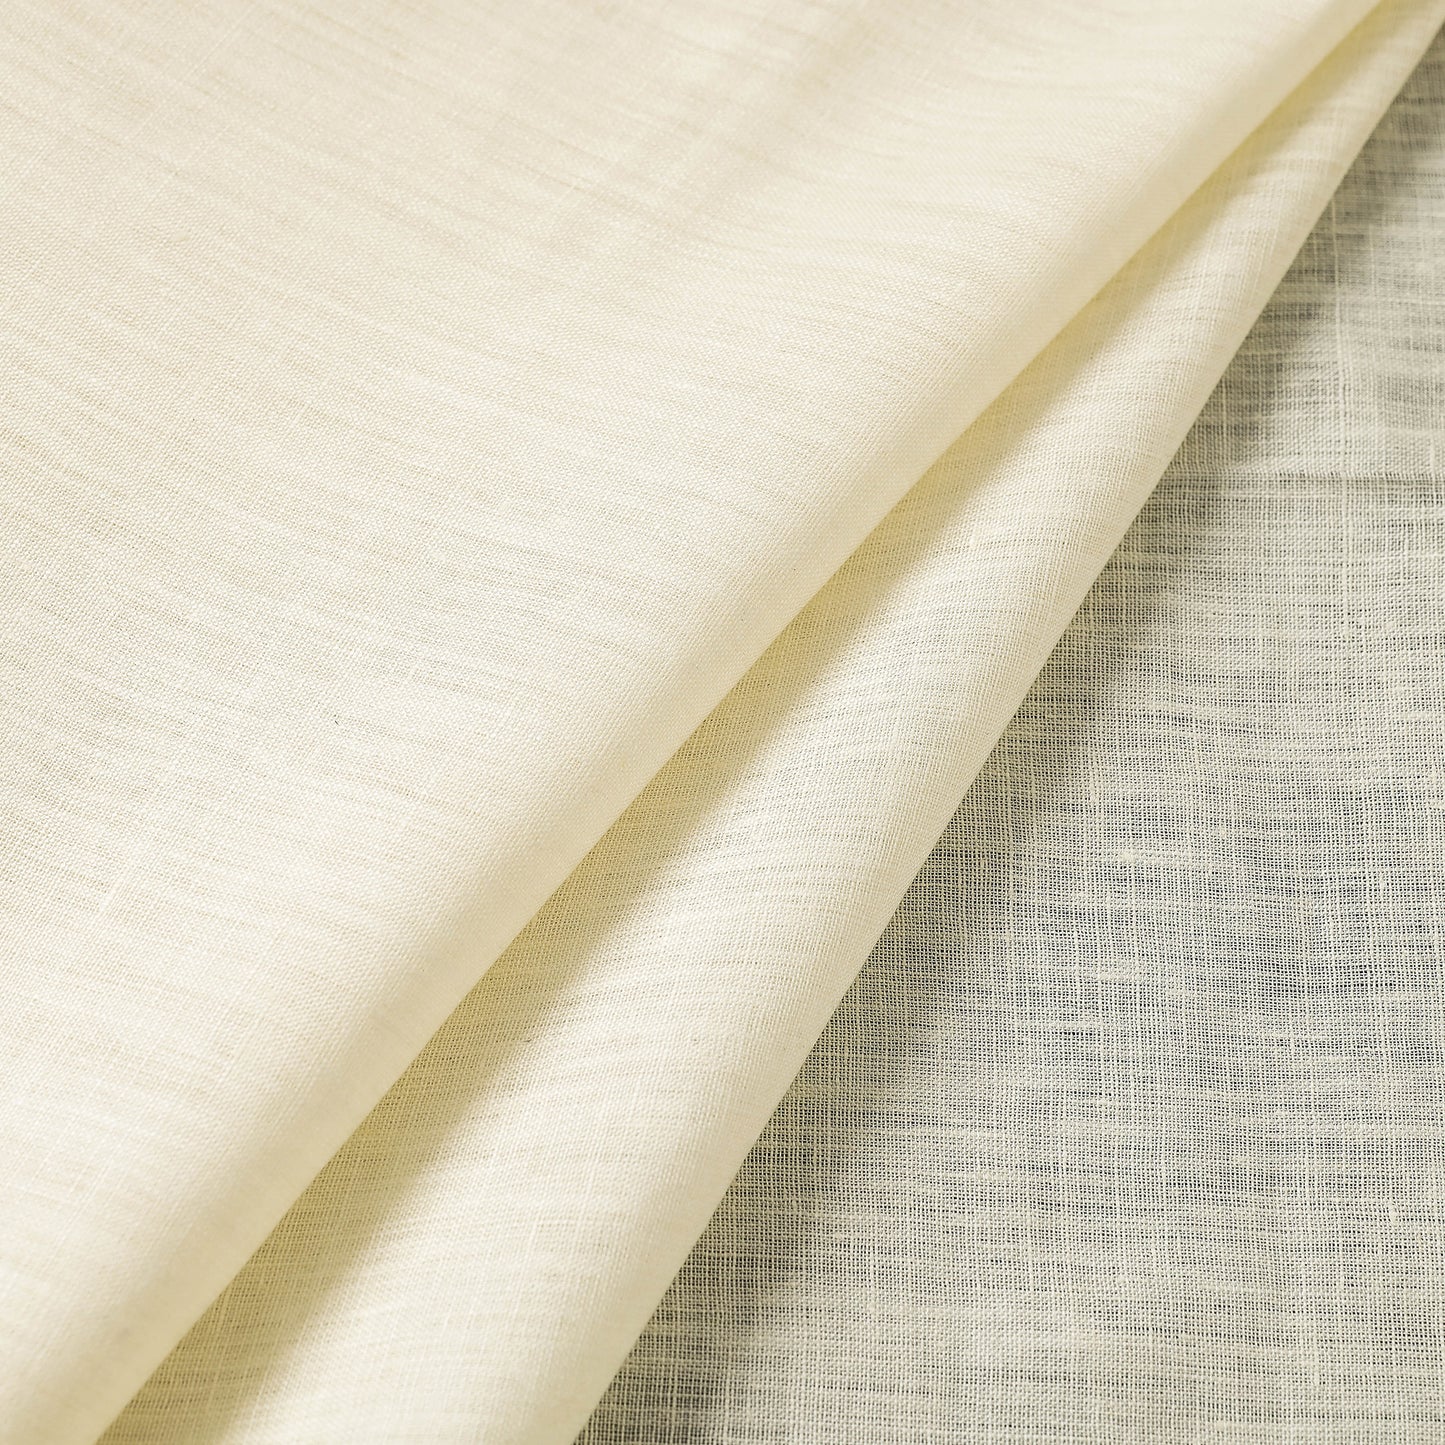 Off White Bhagalpuri Handloom Pure Linen Fabric